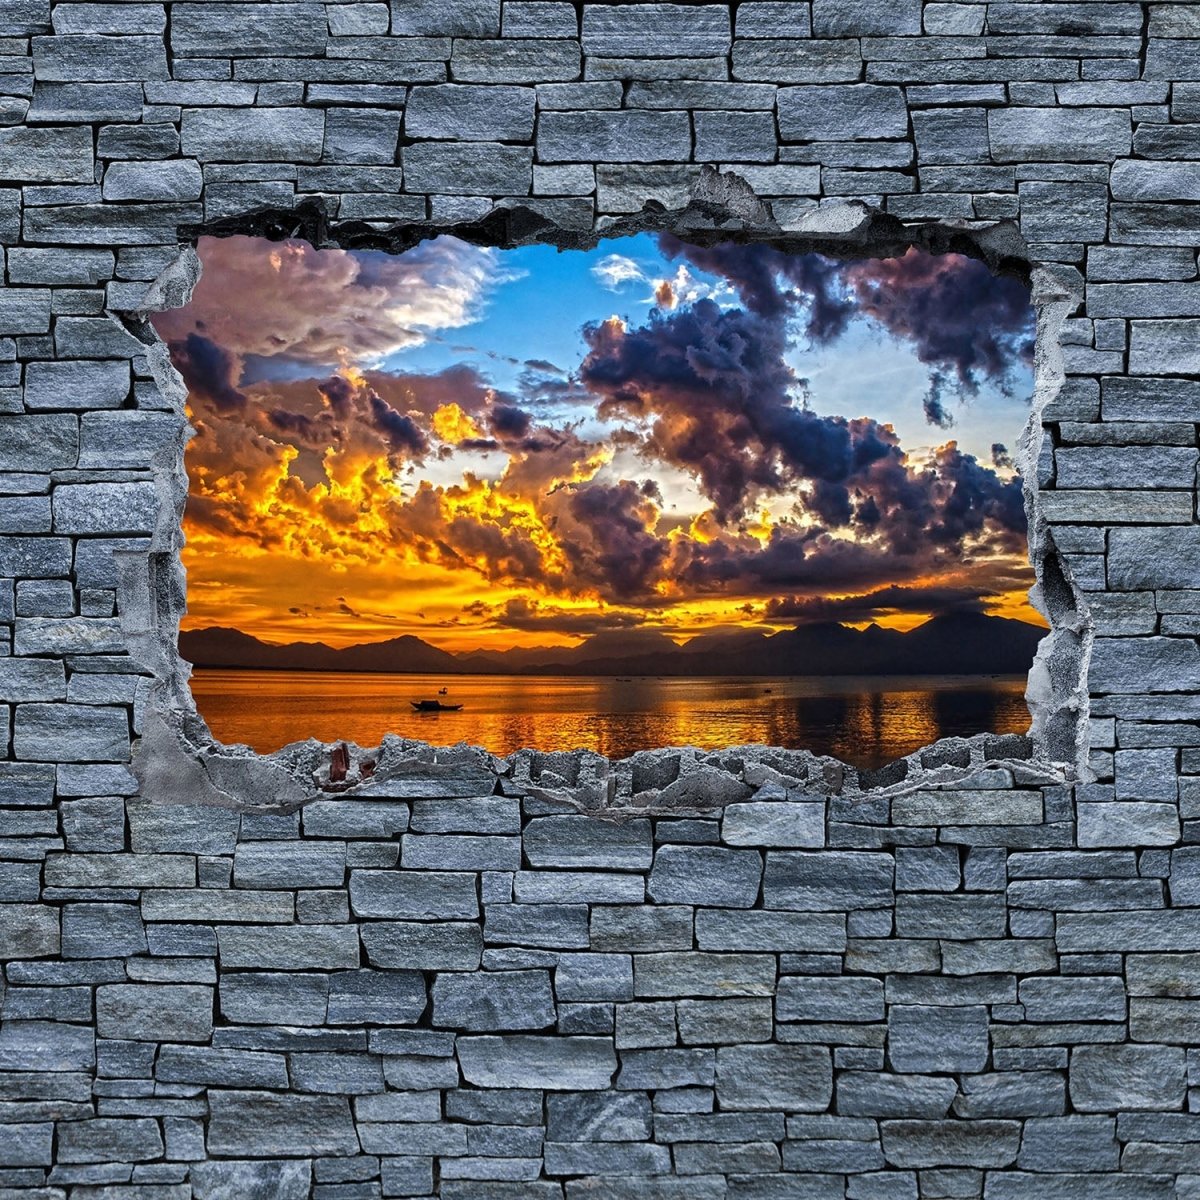 Beistelltisch 3D Sonnenuntergang - grobe Steinmauer M0639 entdecken - Bild 2